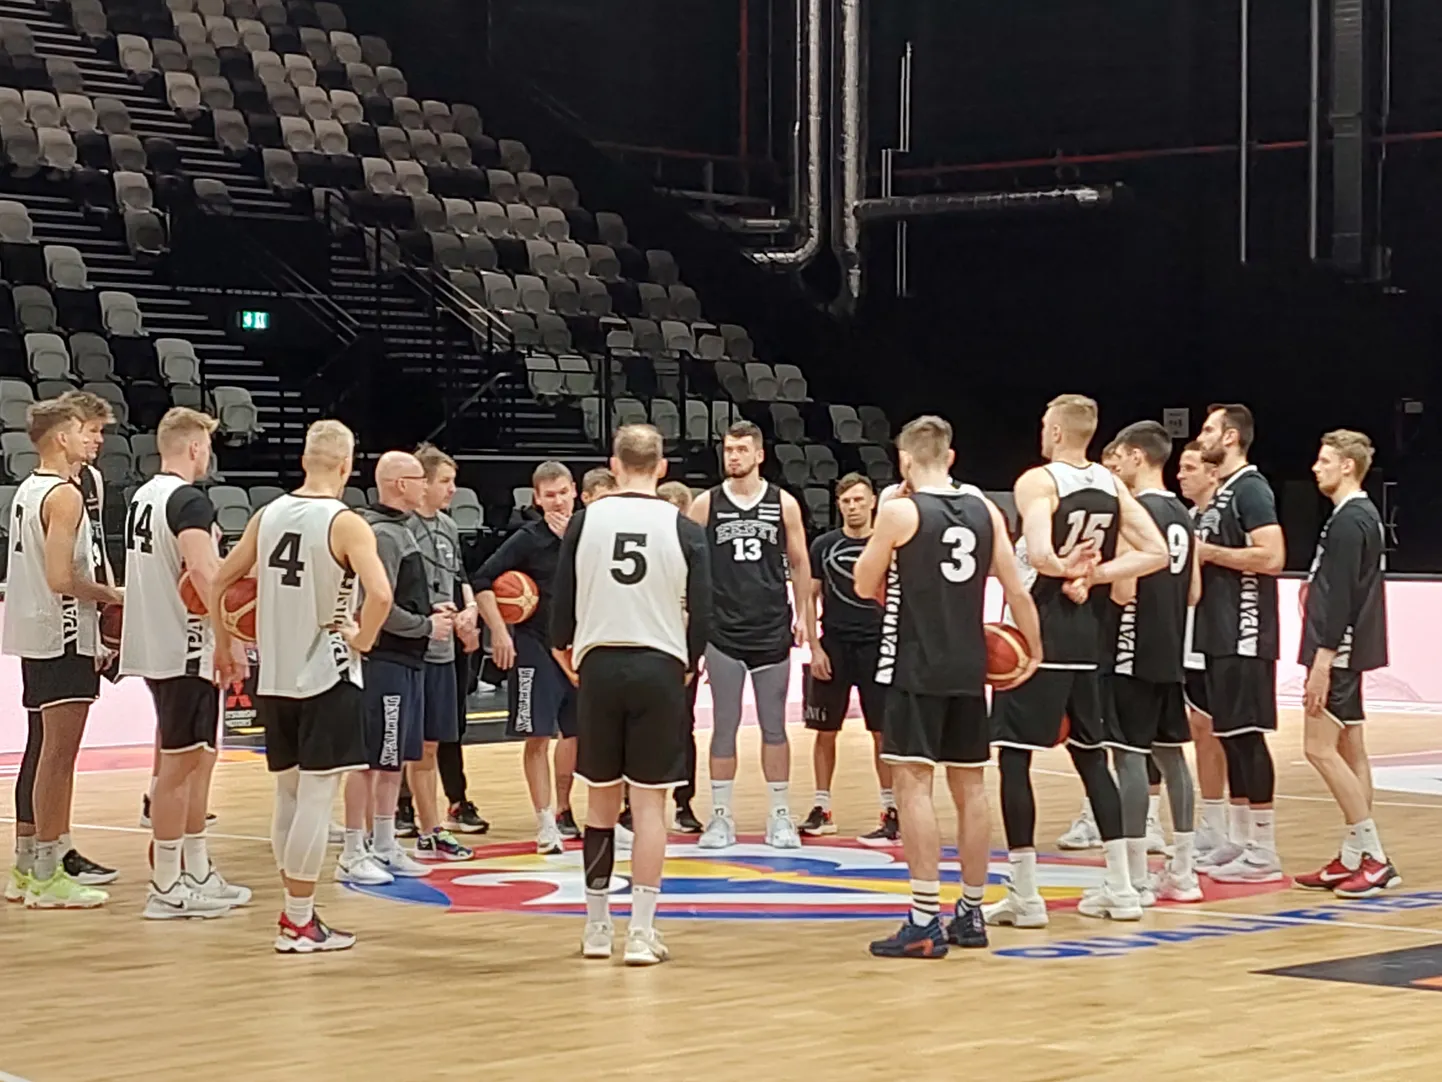 Eesti korvpallikoondis alustab Nürnbergis treeningut. Peatreener Jukka Toijala (keskel) jagab näpunäiteid.